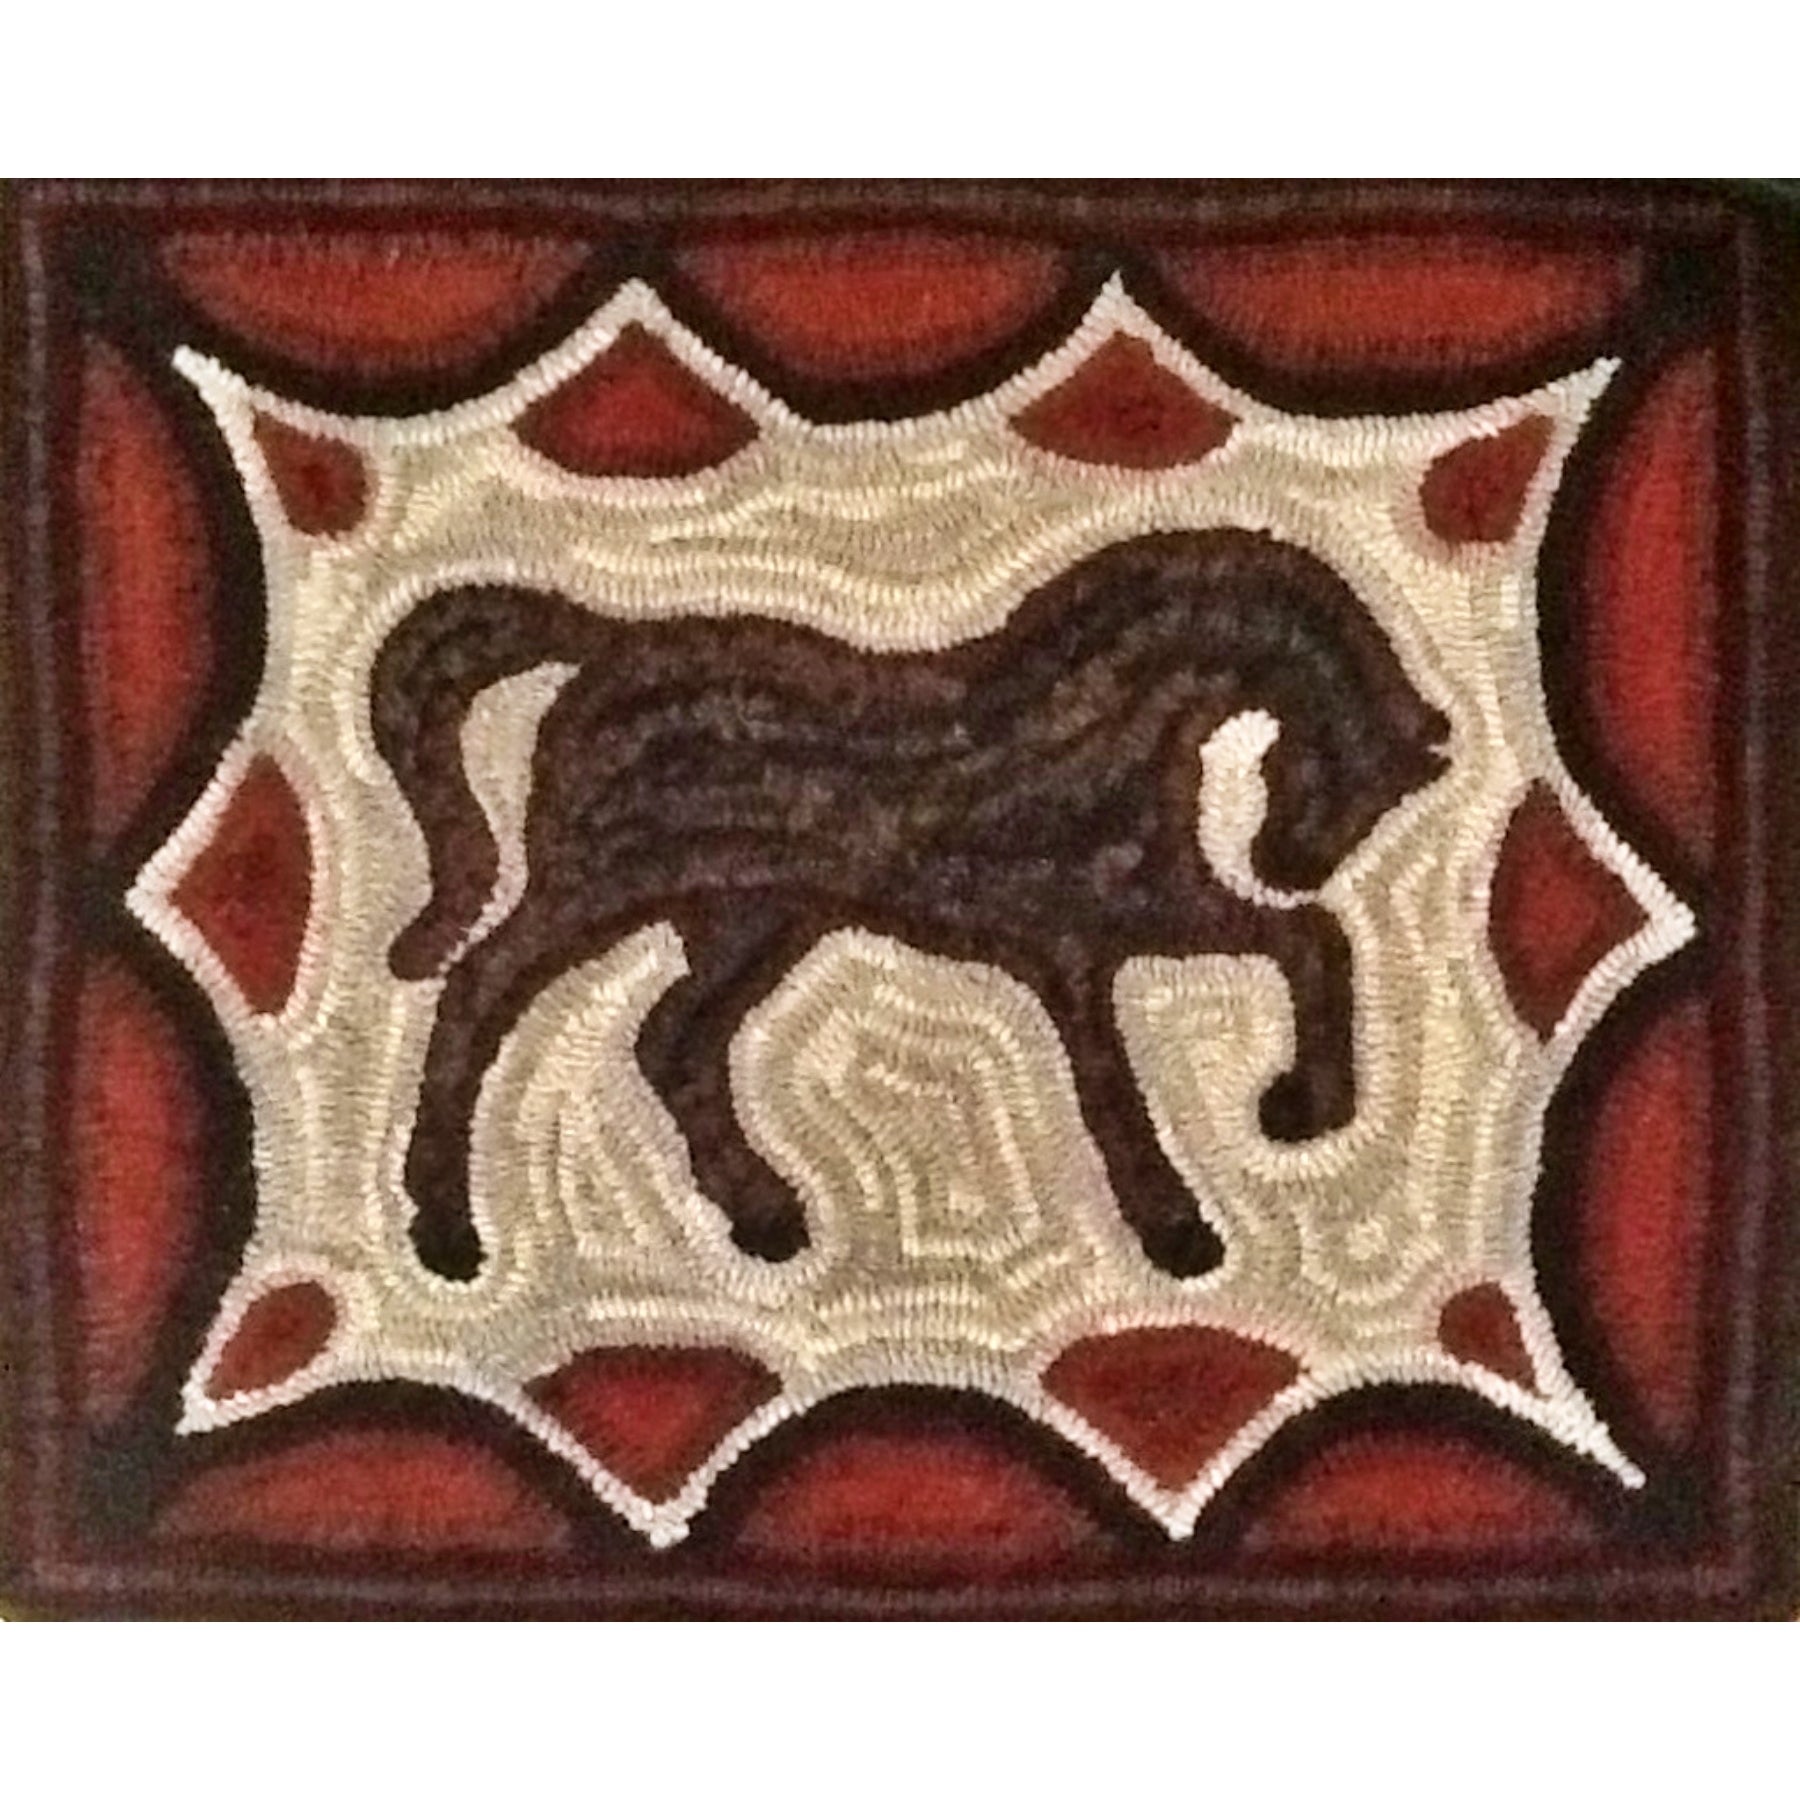 Horse, rug hooked by Ingrid Hieronimus